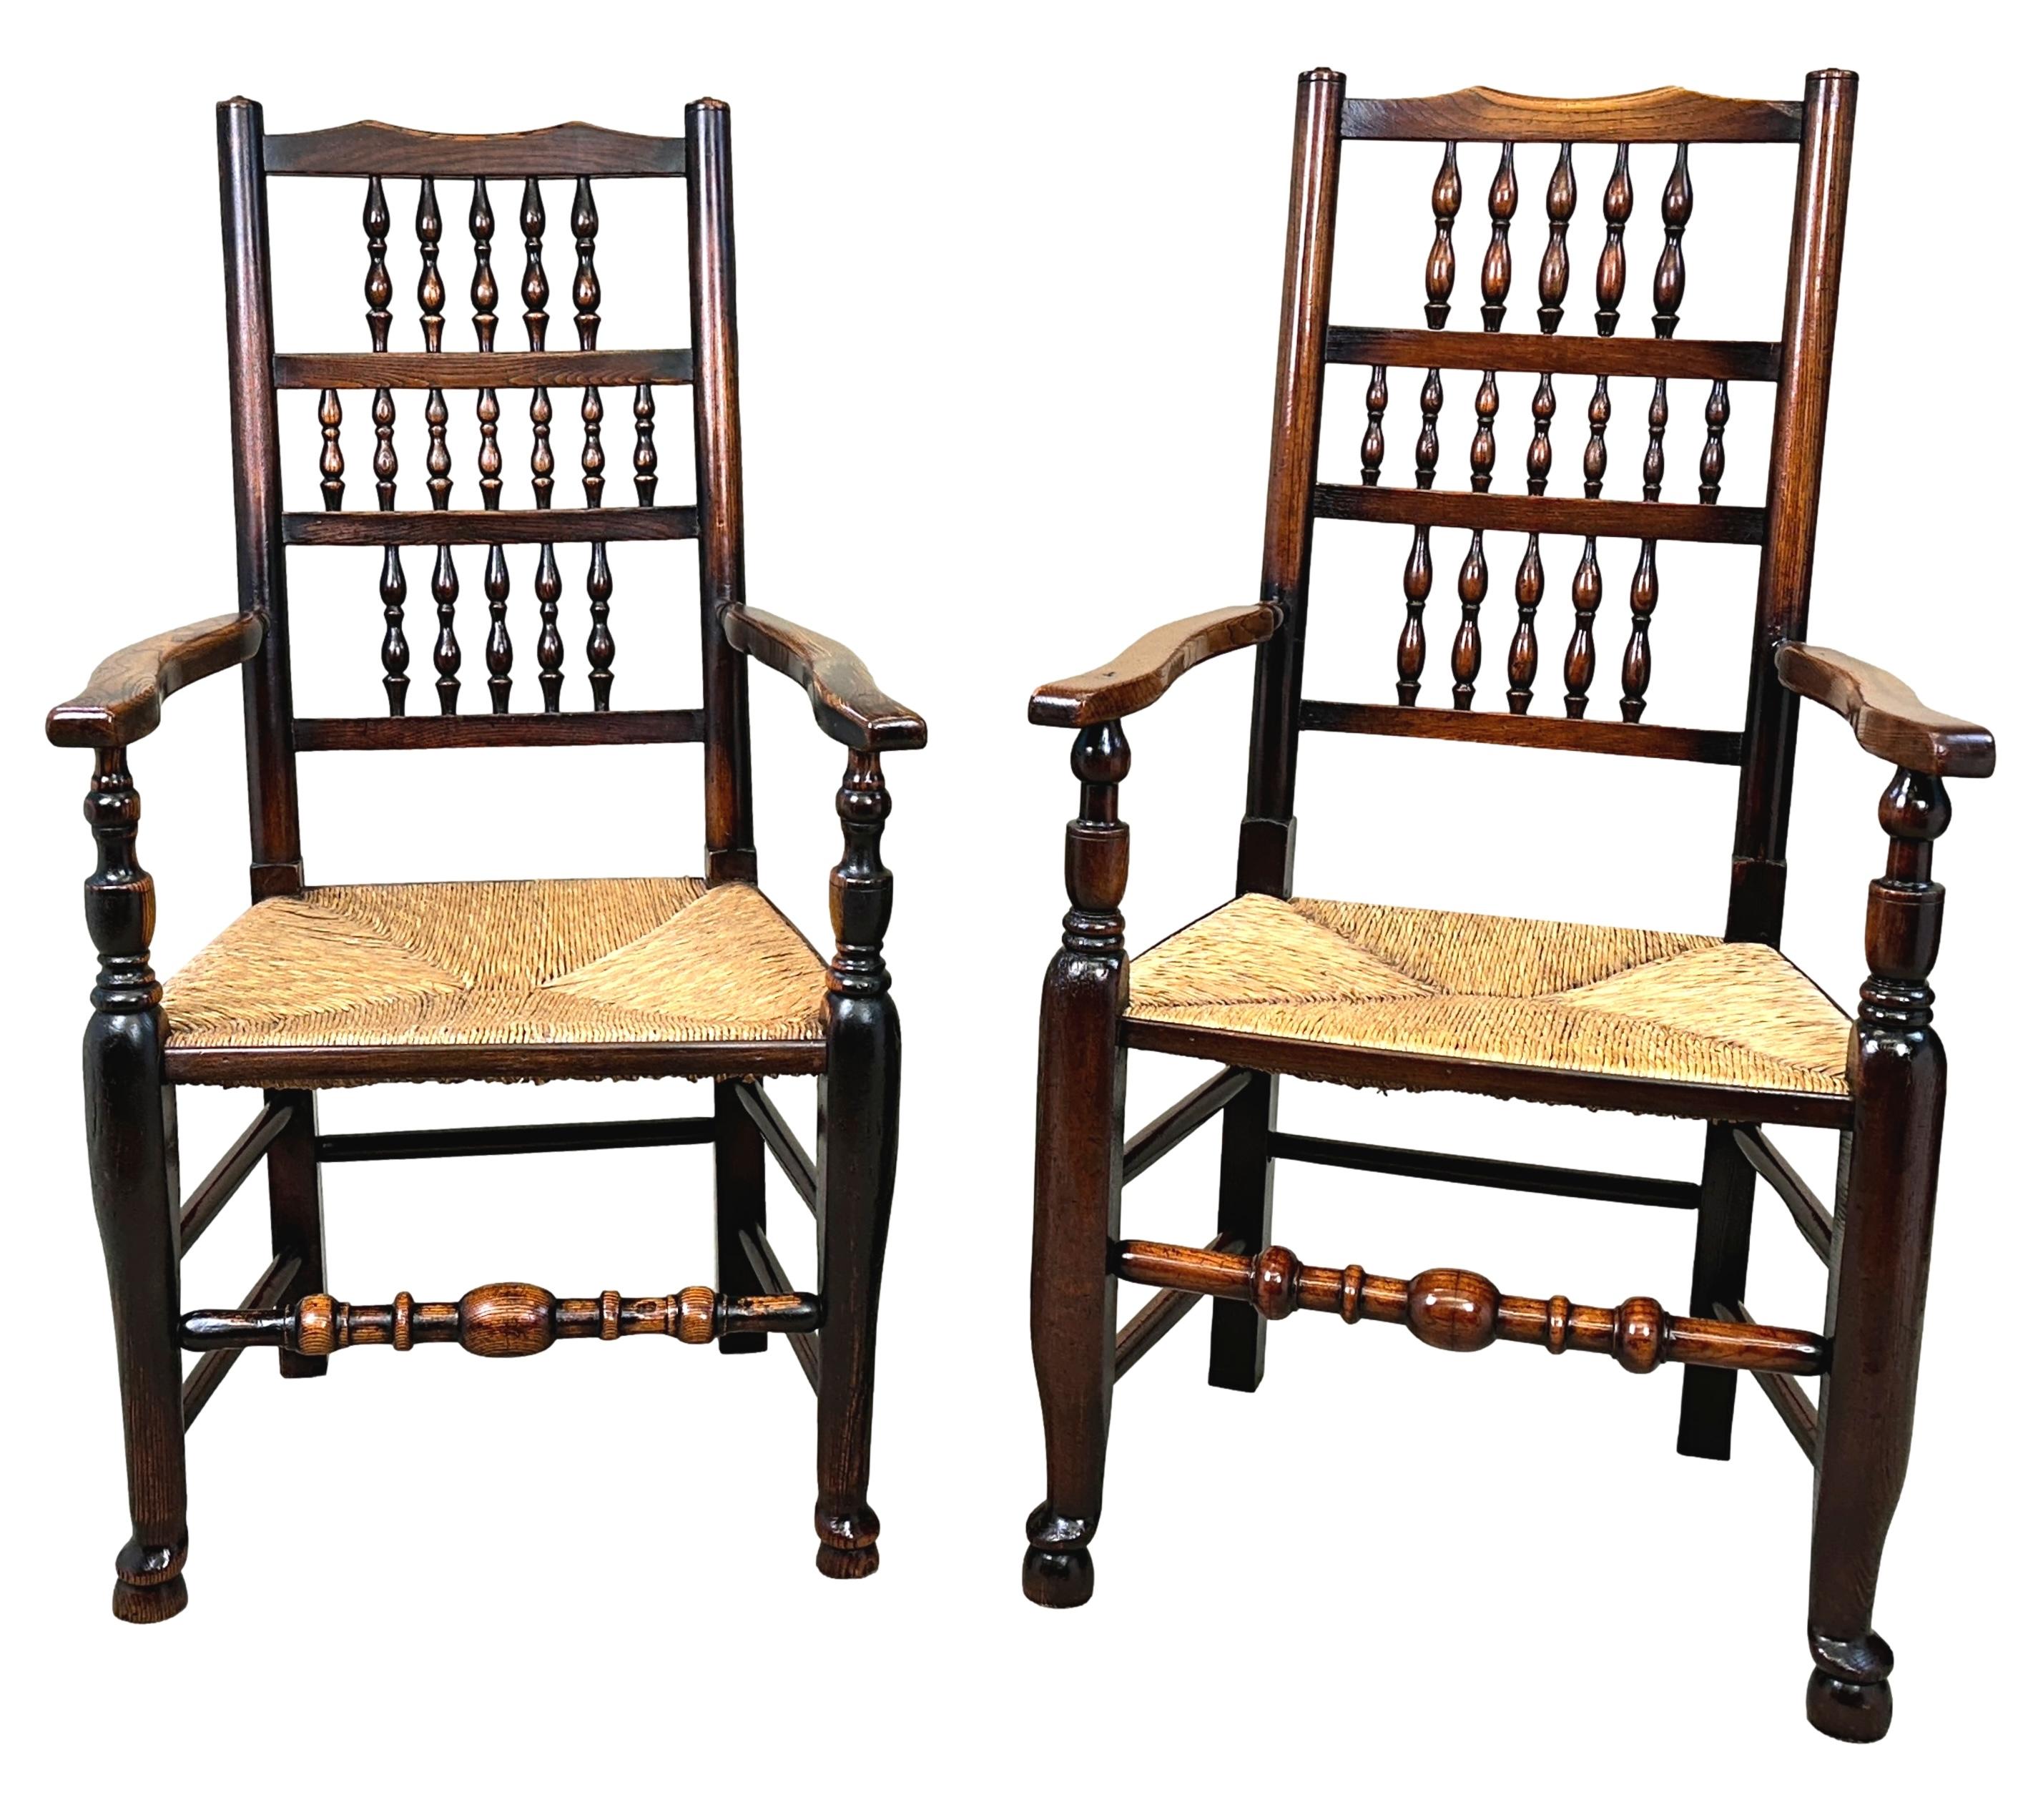 Eine äußerst attraktive und charmante Harlekin-Set von 8 frühen 19. Jahrhundert, Georgian, Esche und Ulme Bauernhaus Küche Esszimmer Stühle, bestehend aus 6 einzelne Stühle und 2 Sessel, mit eleganten Spindellehnen über Rushed Sitze auf eleganten